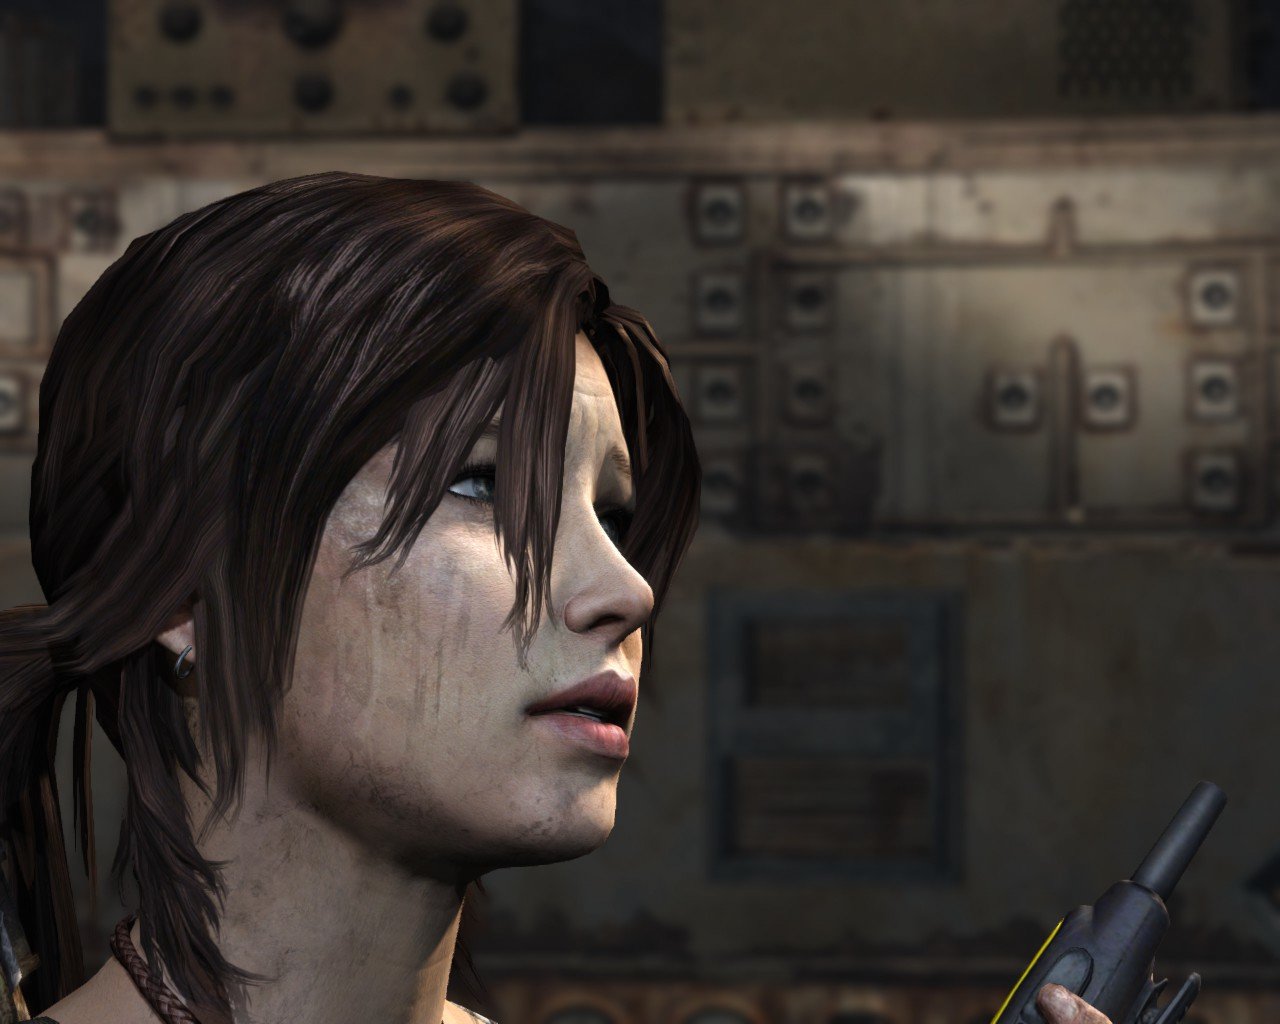 Best Tomb Raider (Lara Croft) wallpaper ID:436973 for High Resolution hd 1280x1024 PC